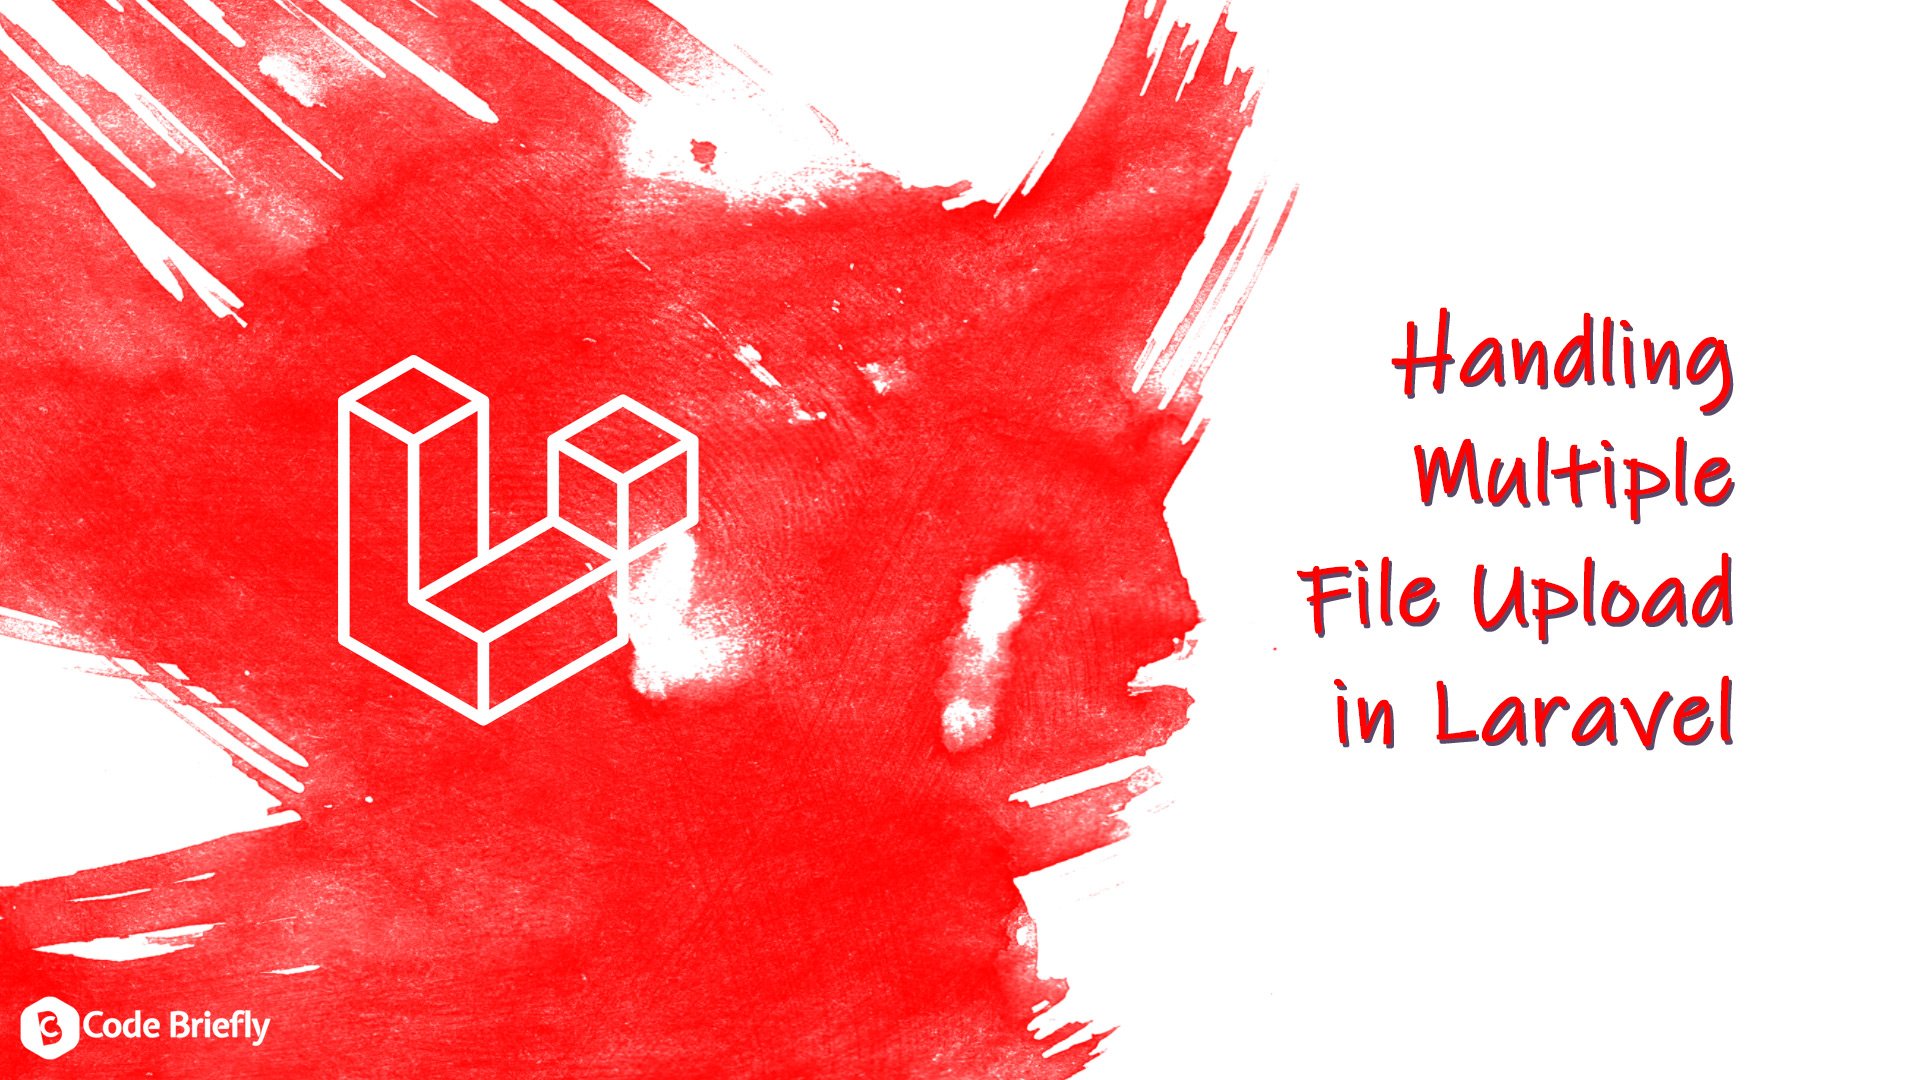 Handling Multiple File Upload in Laravel